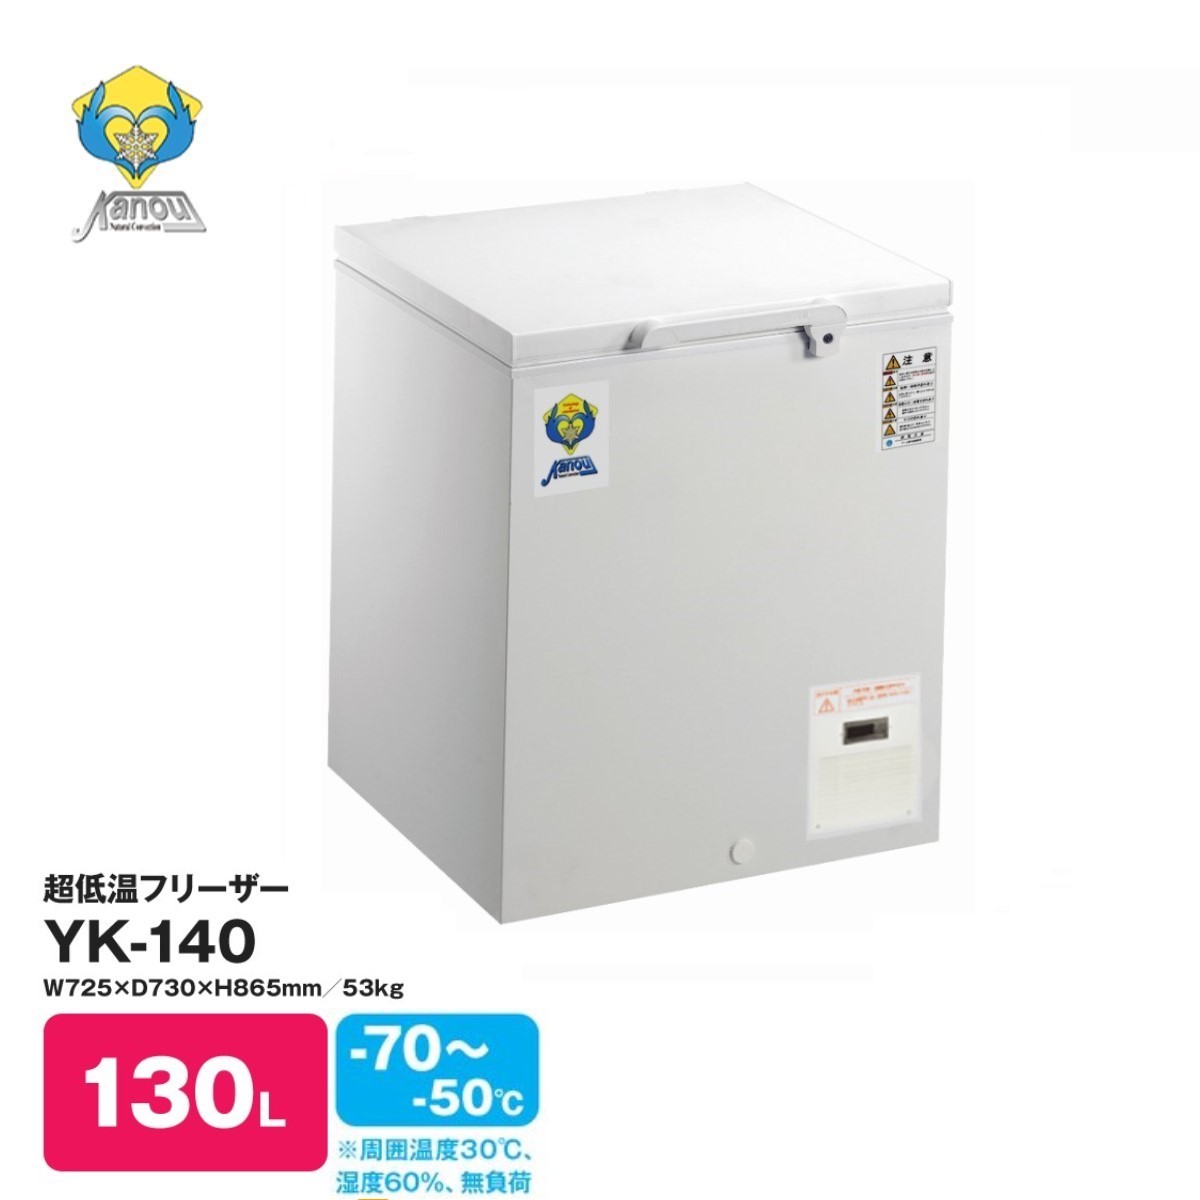 カノウ冷機社製 －70℃ 超低温フリーザー 130L　YK-140　送料無料